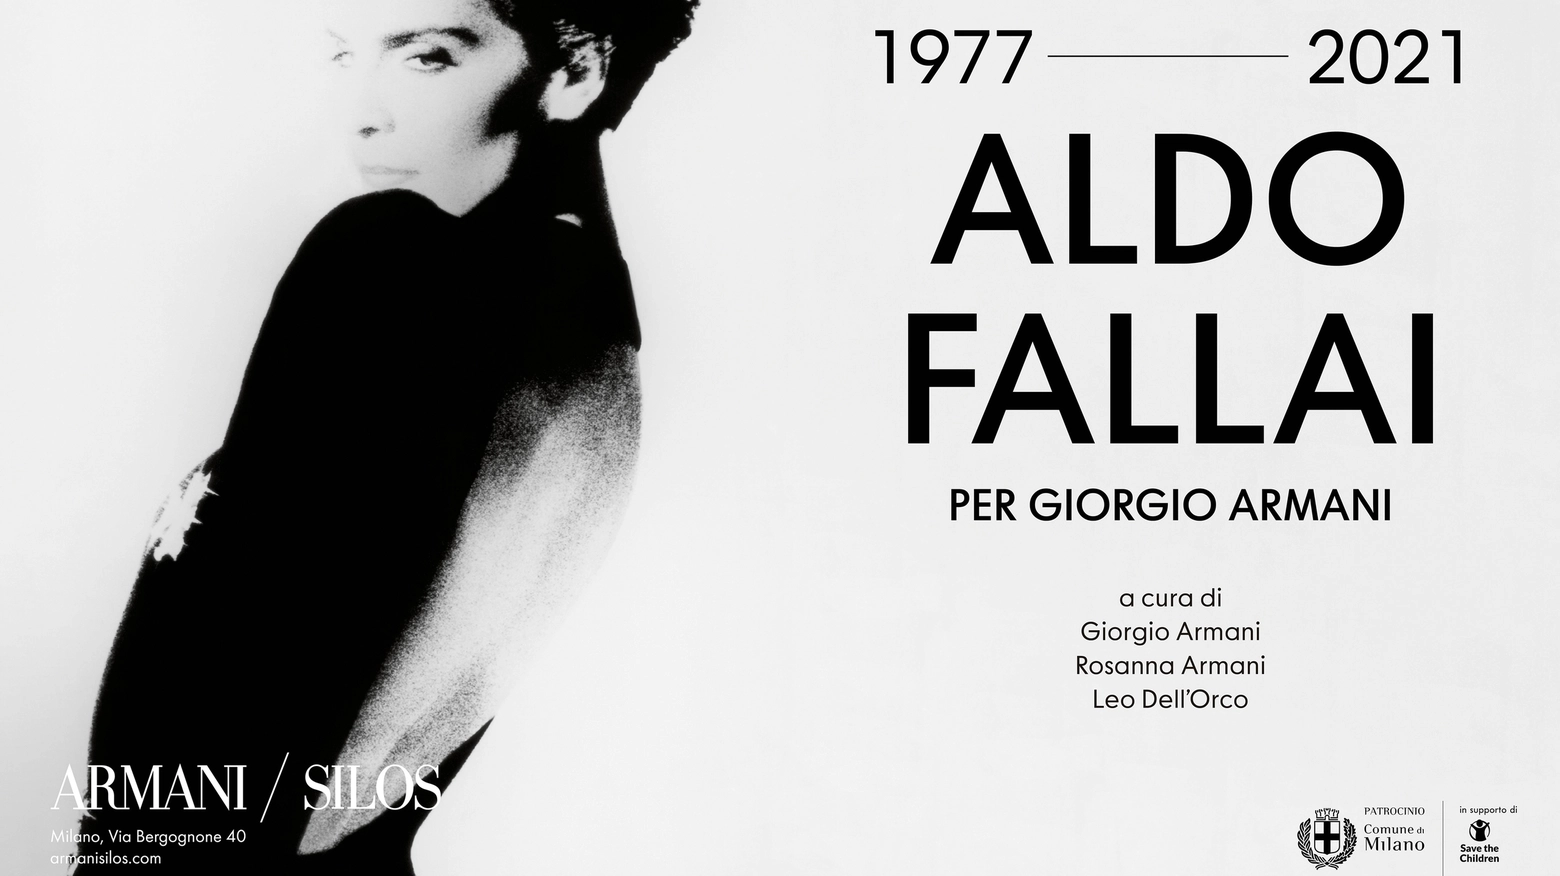 Armani Silos - Aldo Fallai per Giorgio Armani, 1977-2021.jpg